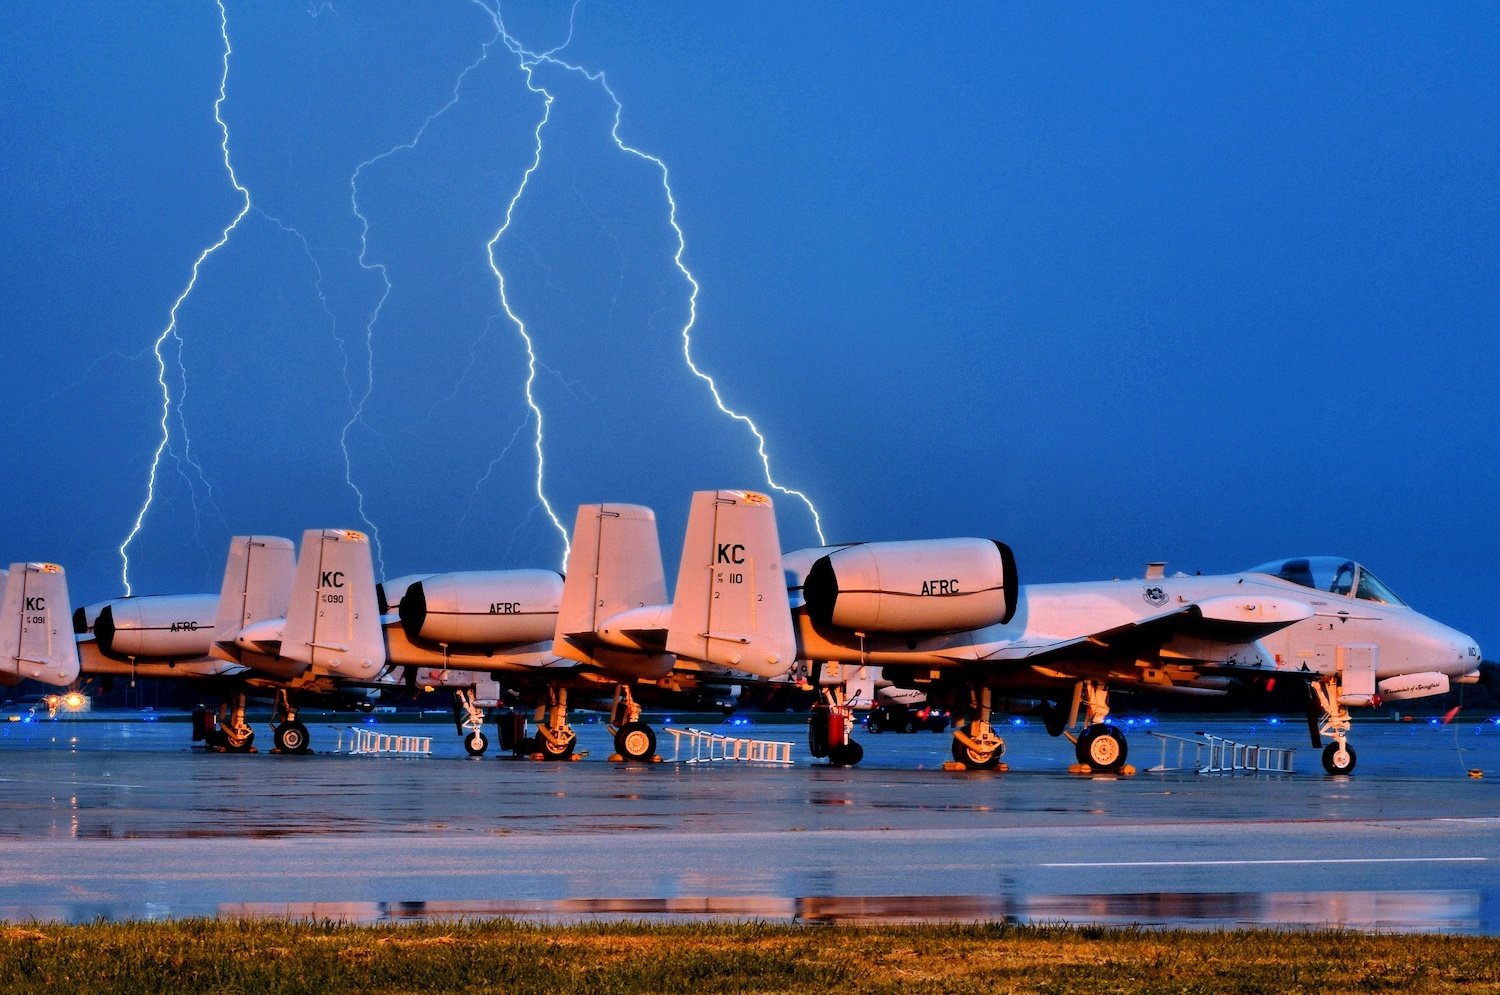 water-ground-rain-wet-airplane-aircraft-673403-pxhere.com